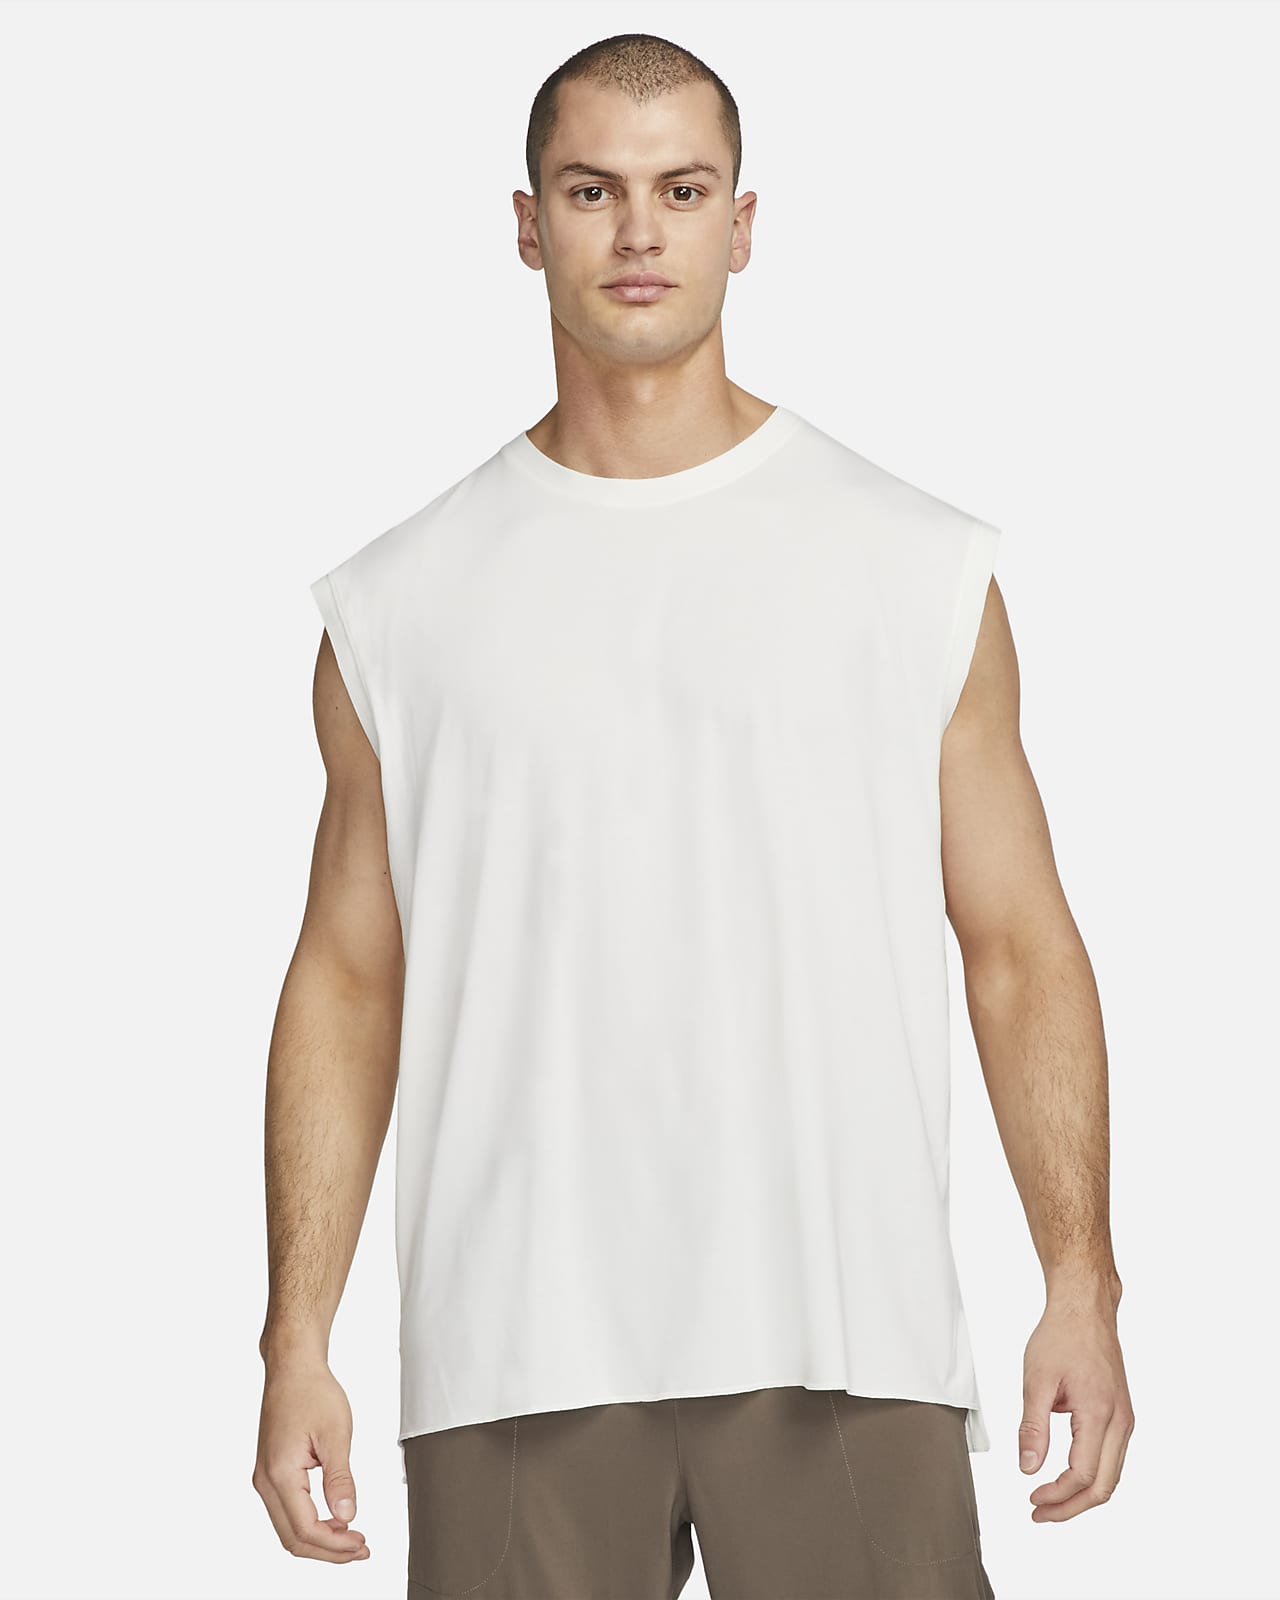 Nike Dri-fit Yoga T-shirt in Brown for Men